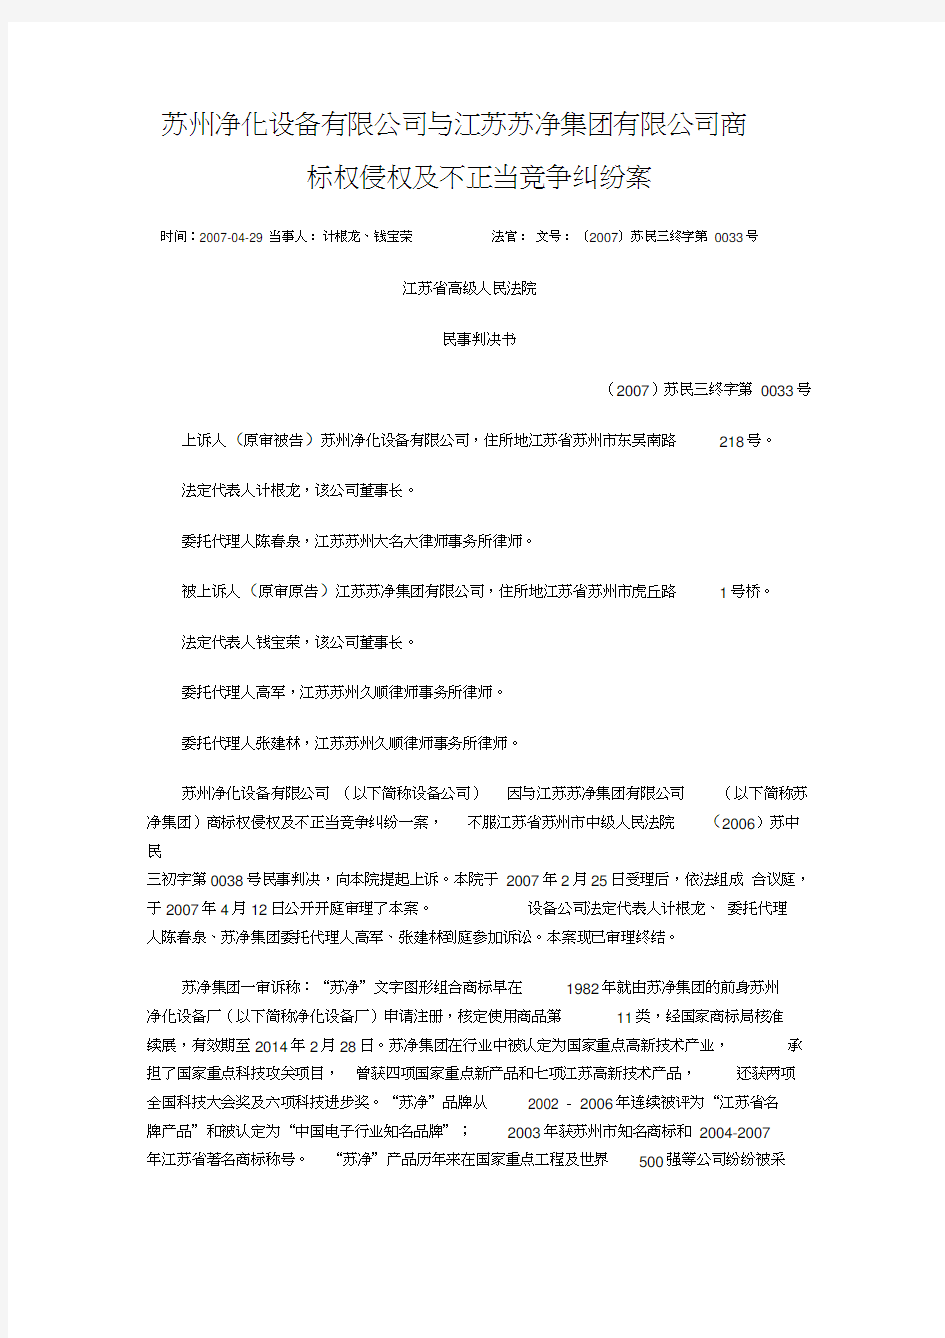 (竞争策略)与江苏苏净集团有限公司商标权侵权及不正当竞争纠纷案